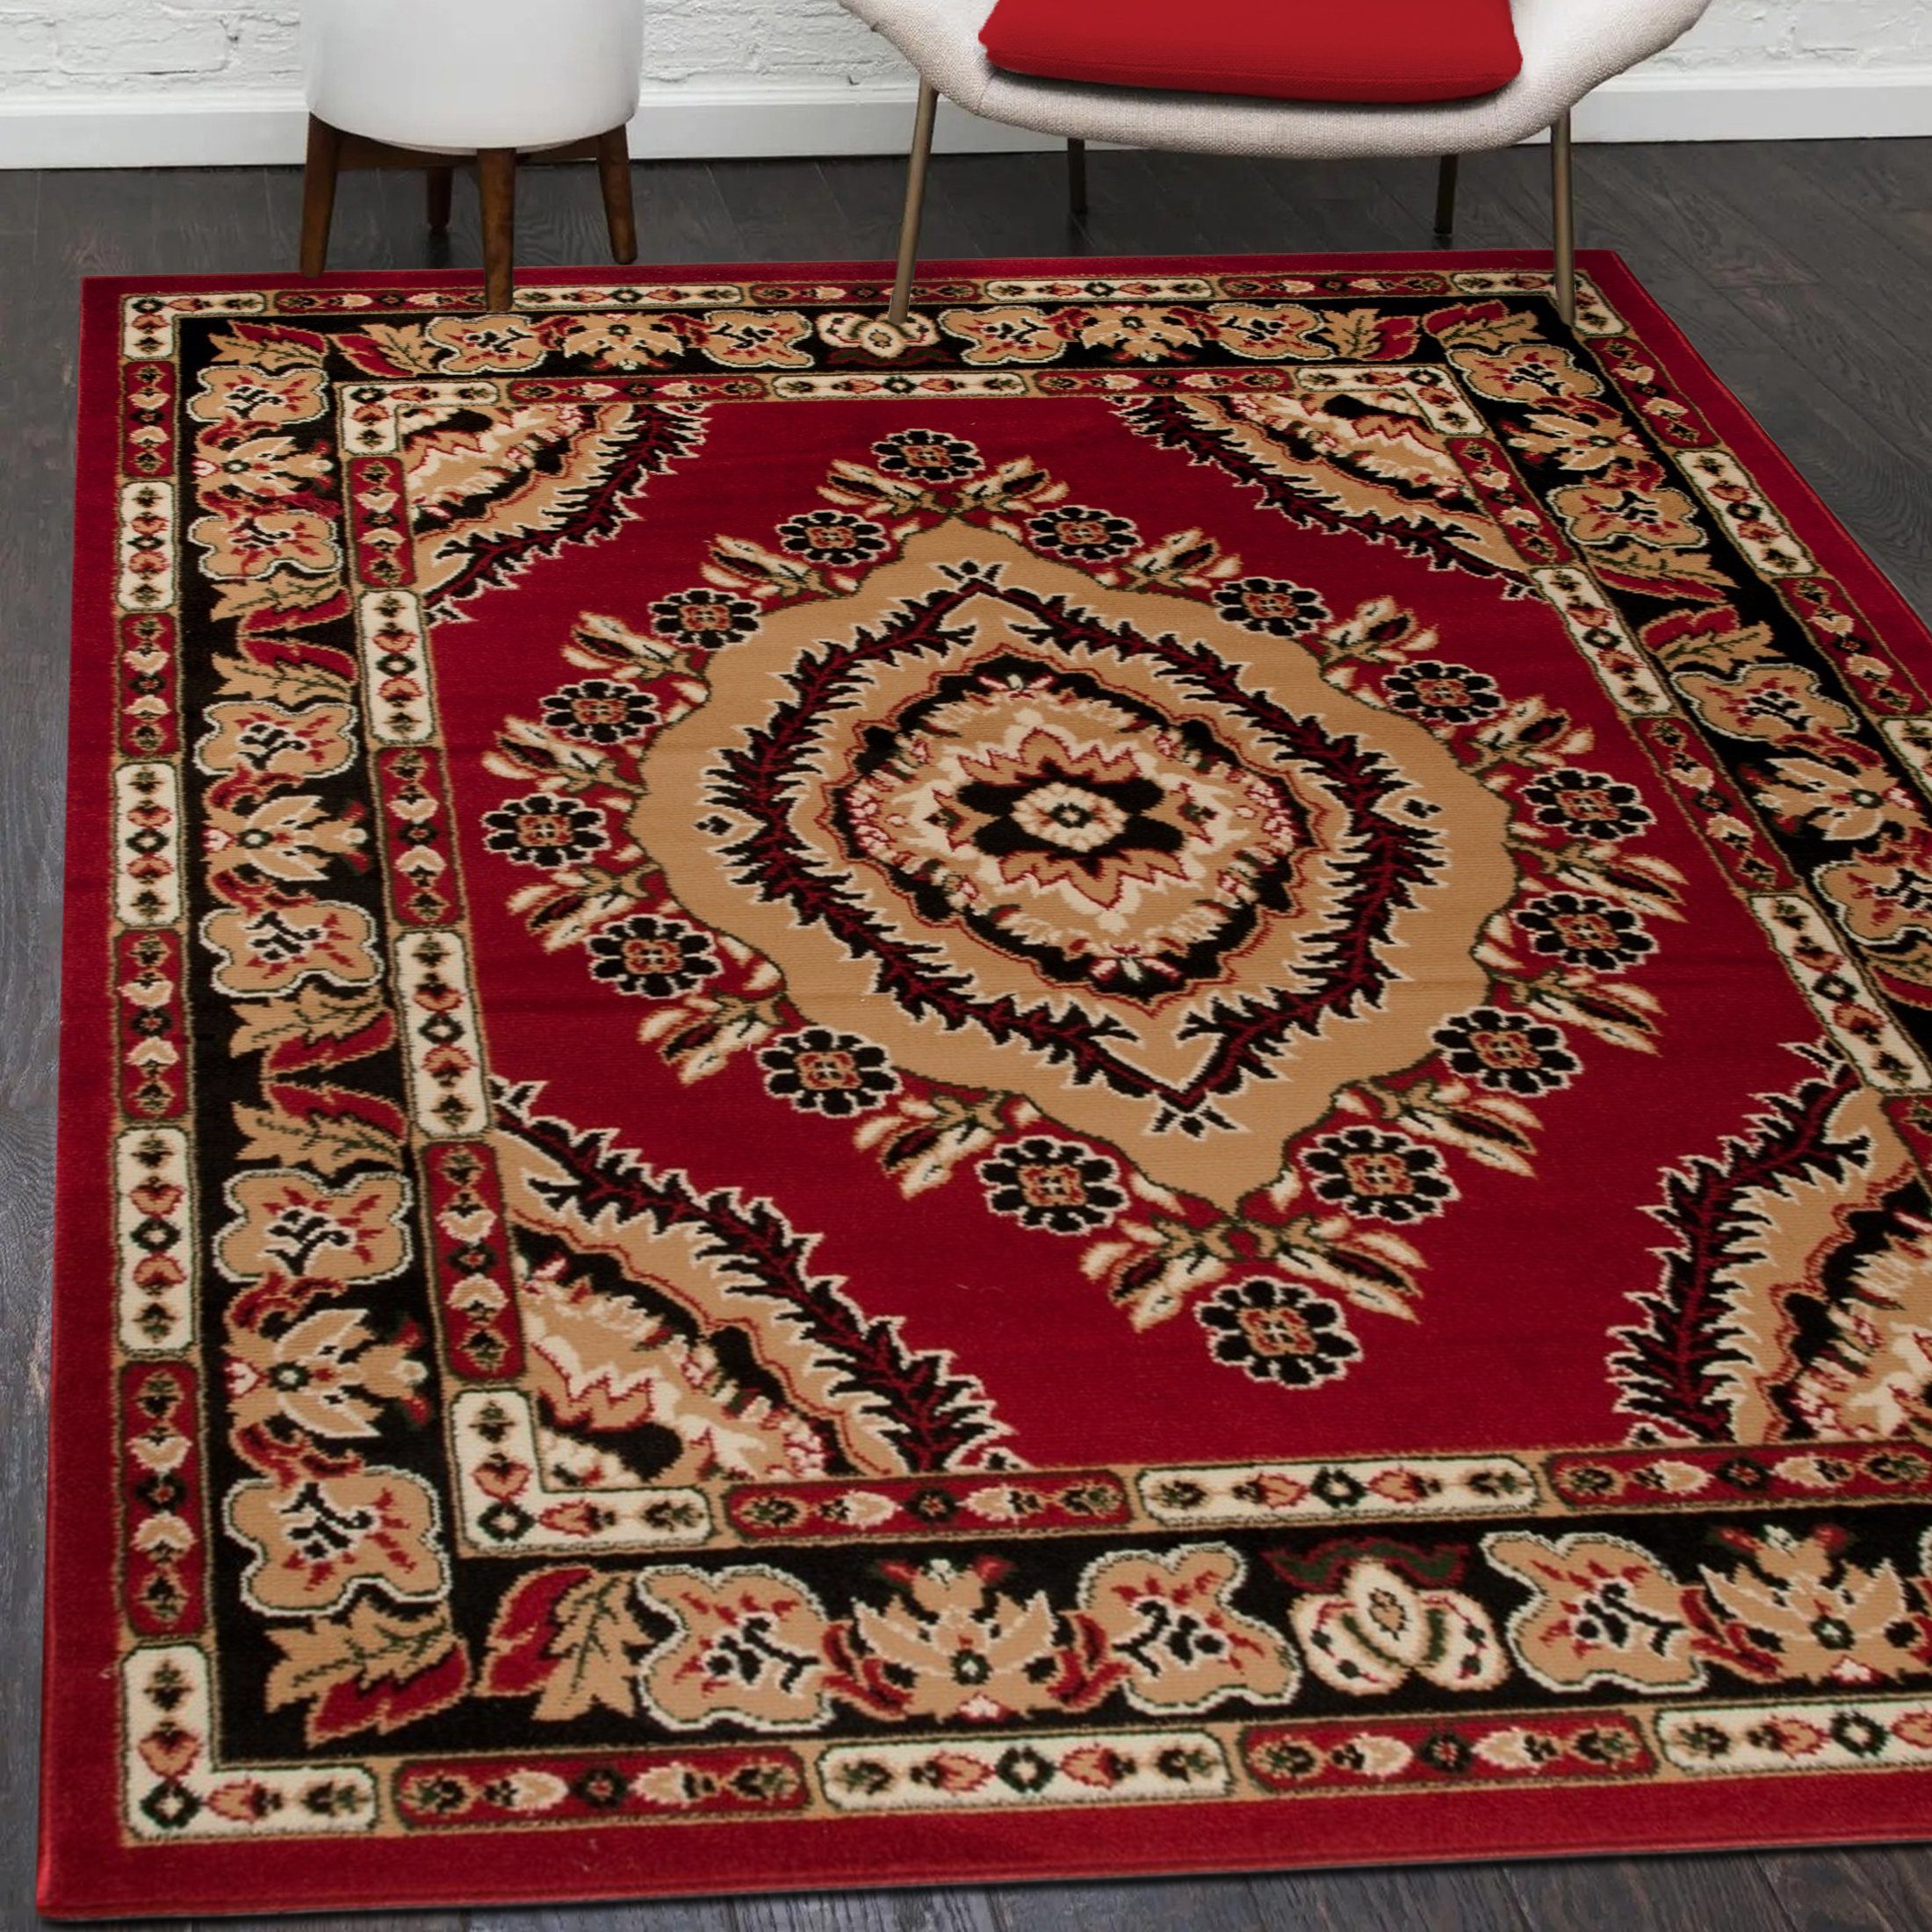 Orientteppich Orientalisch Vintage Teppich Kurzflor Wohnzimmerteppich Rot, Mazovia, 60 x 100 cm, Fußbodenheizung, Allergiker geeignet, Farbecht, Pflegeleicht Rot / 4493A-RED